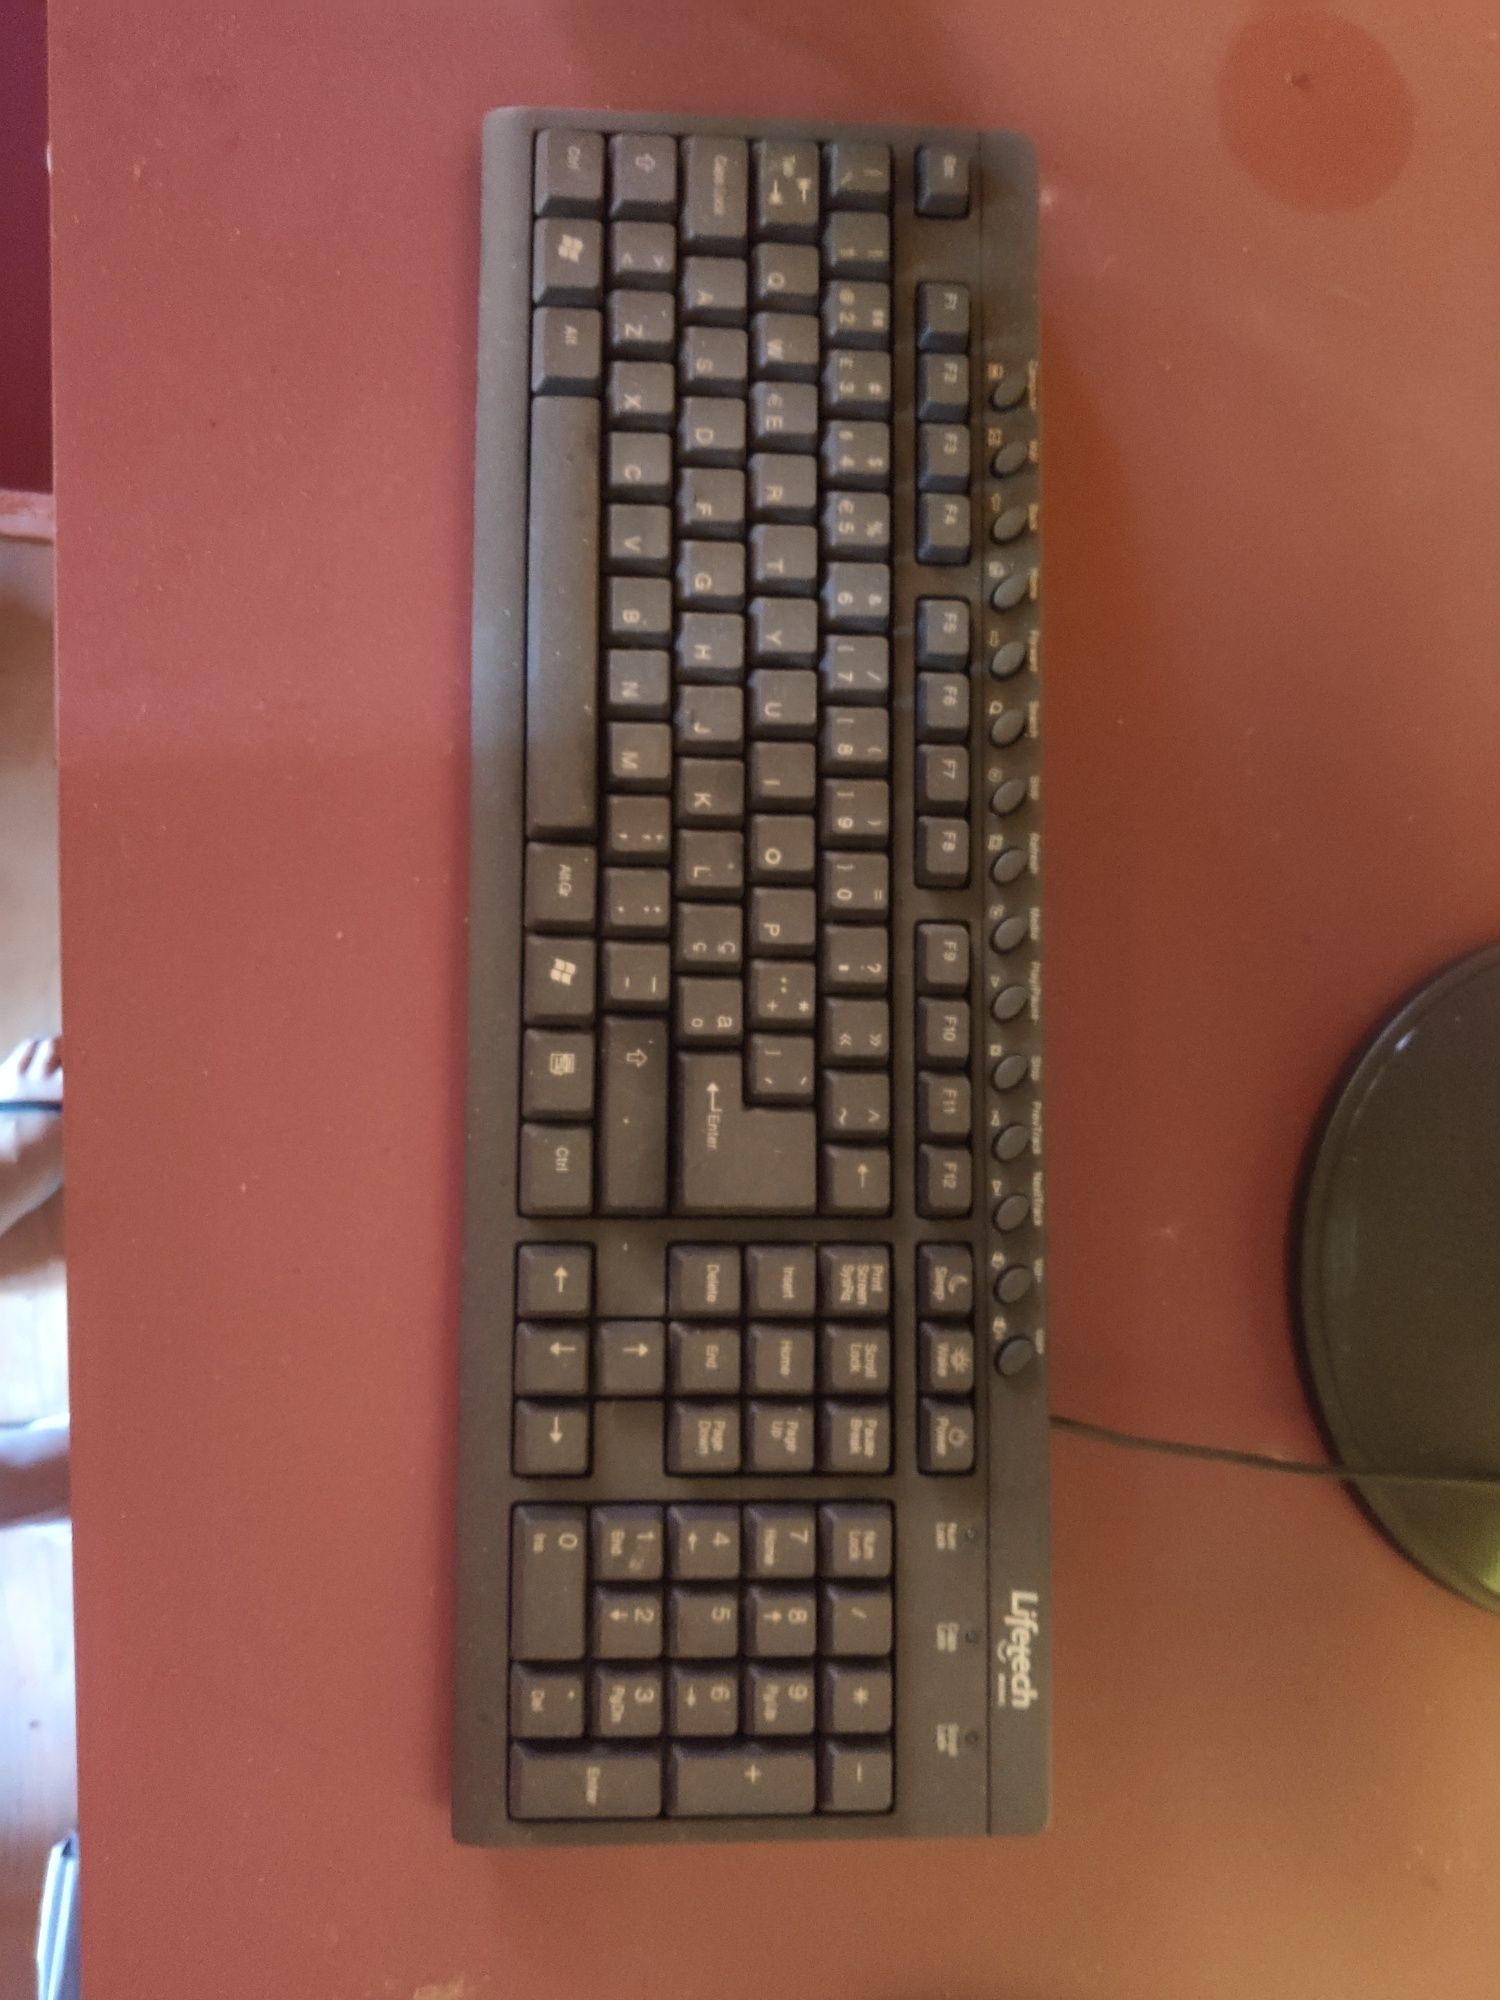 Monitor, teclado e rato